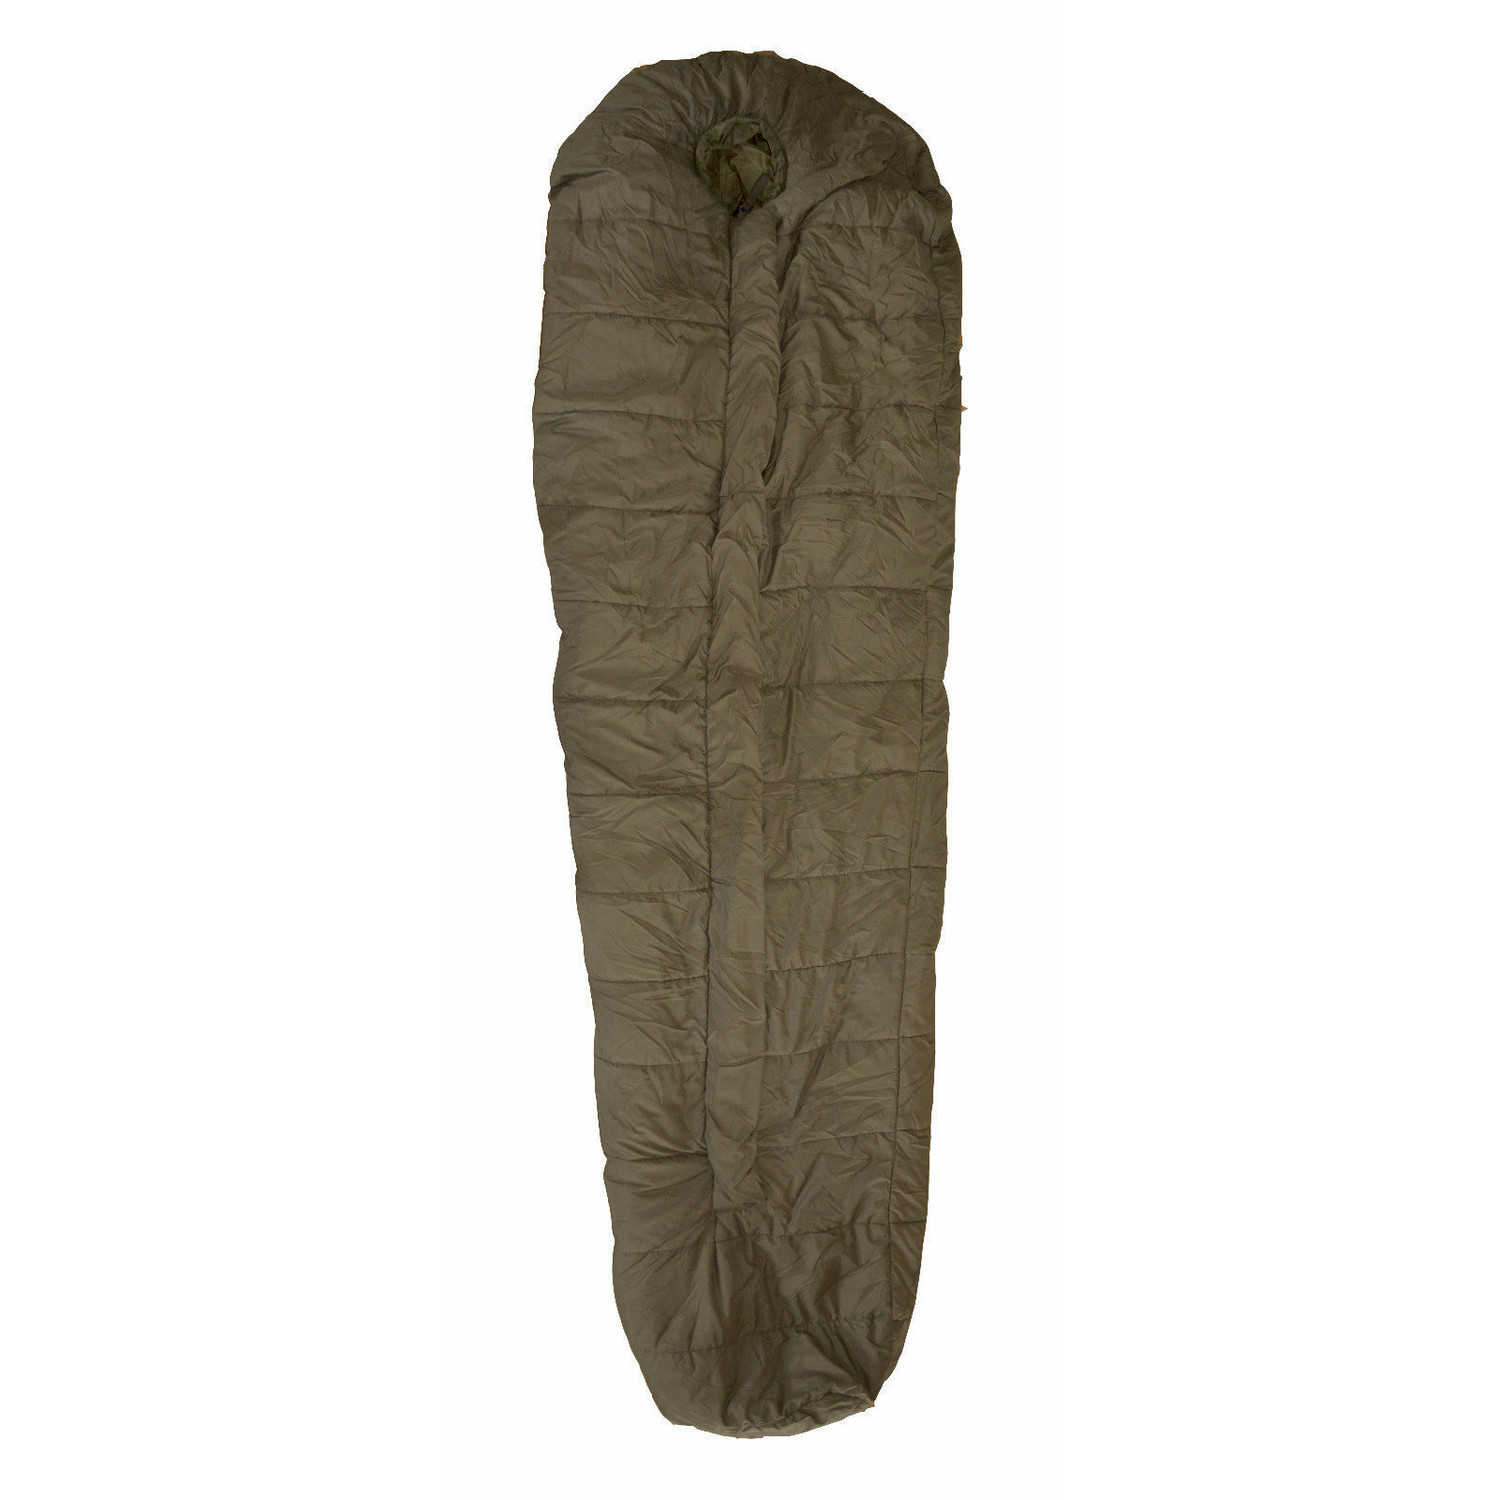 BW Schlafsack Allgemein II mit Packsack, gebraucht, 200 cm, 2-Wege-Reißverschluss, guter Zustand